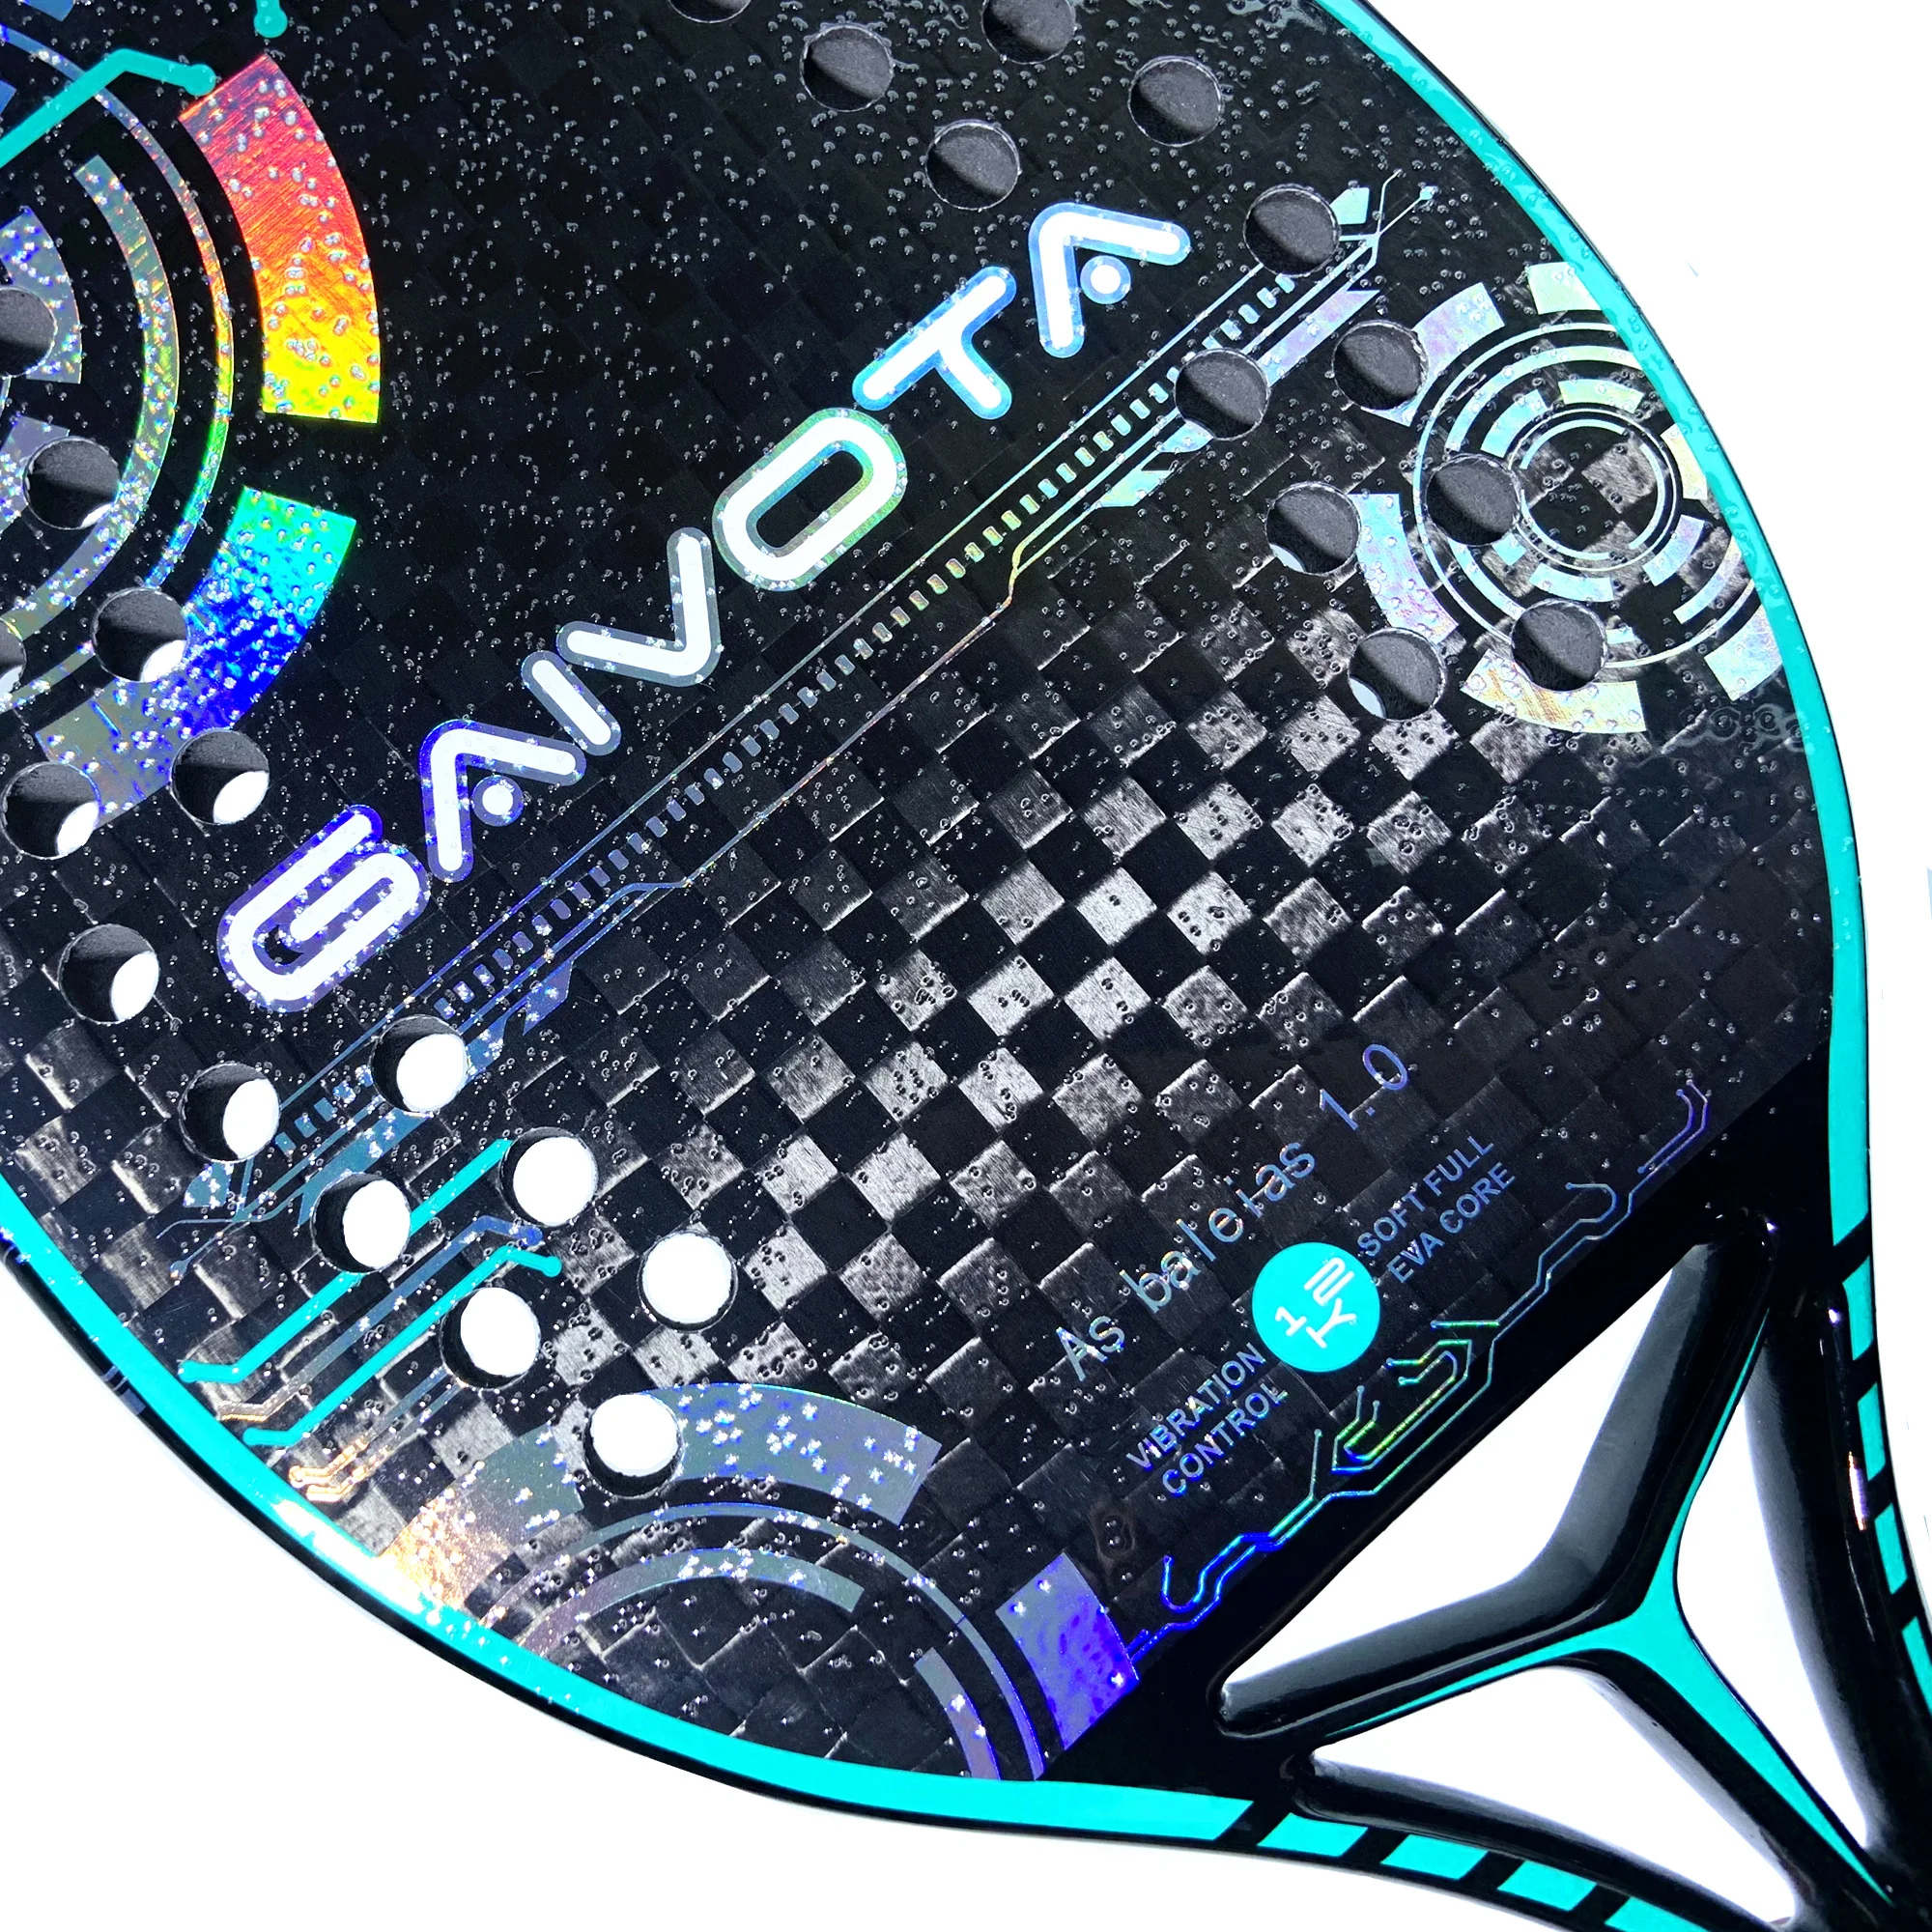 Новинка 2023, ракетка для пляжного тенниса GAIVOTA 3K/12K/18K, шероховатая поверхность + рюкзак